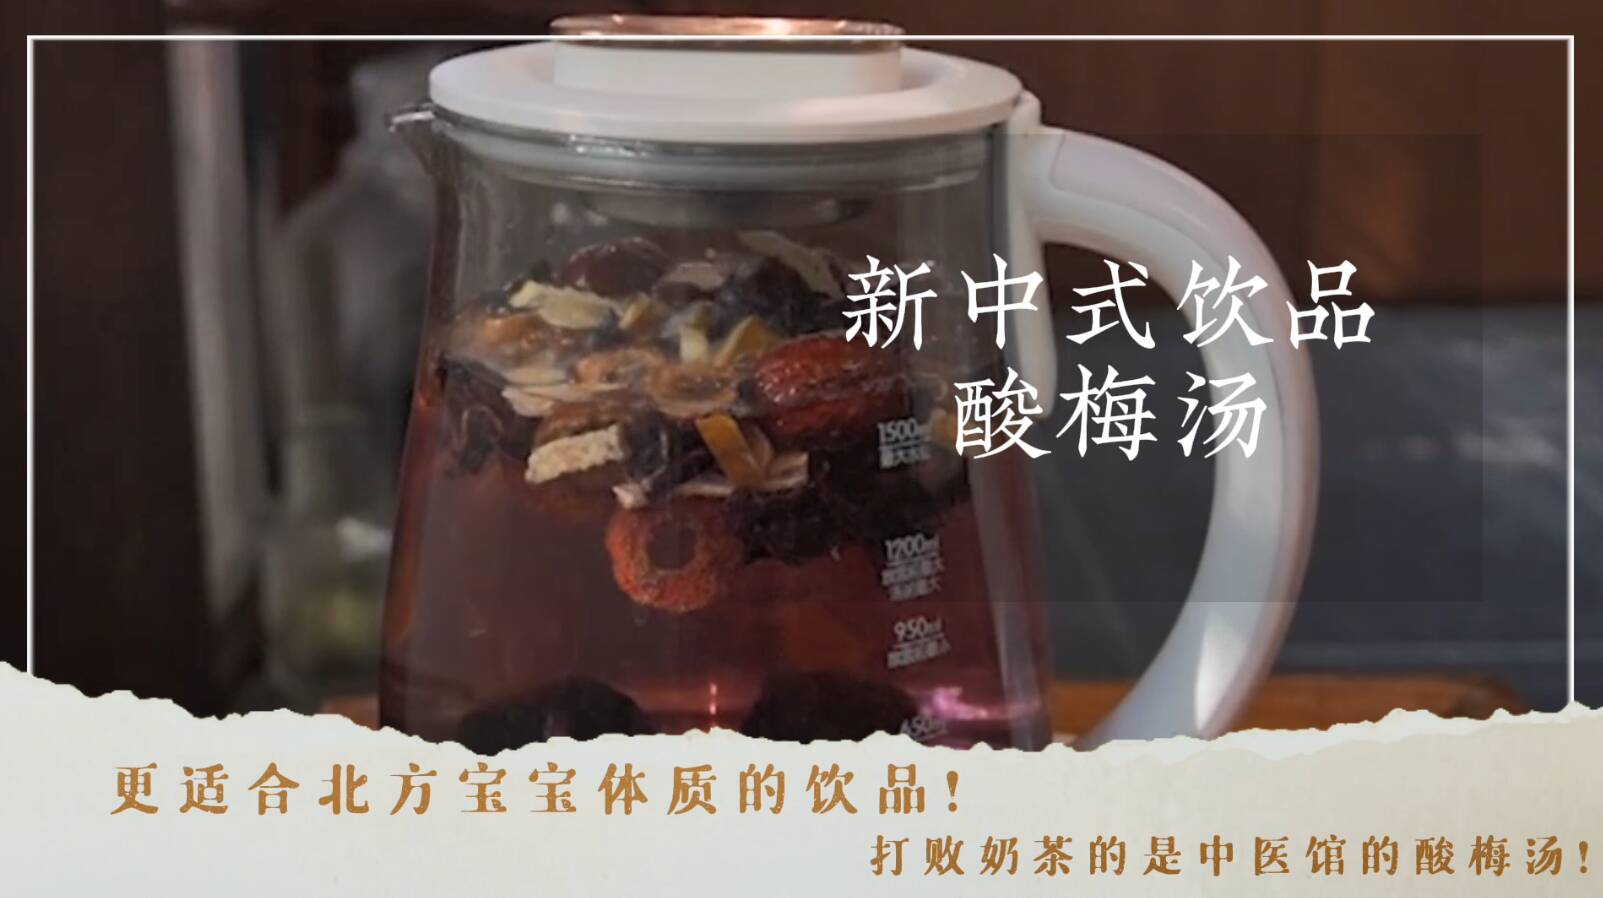 更适合中国宝宝体质的“下午茶”！原来打败奶茶的是中医馆里的泉水酸梅汤